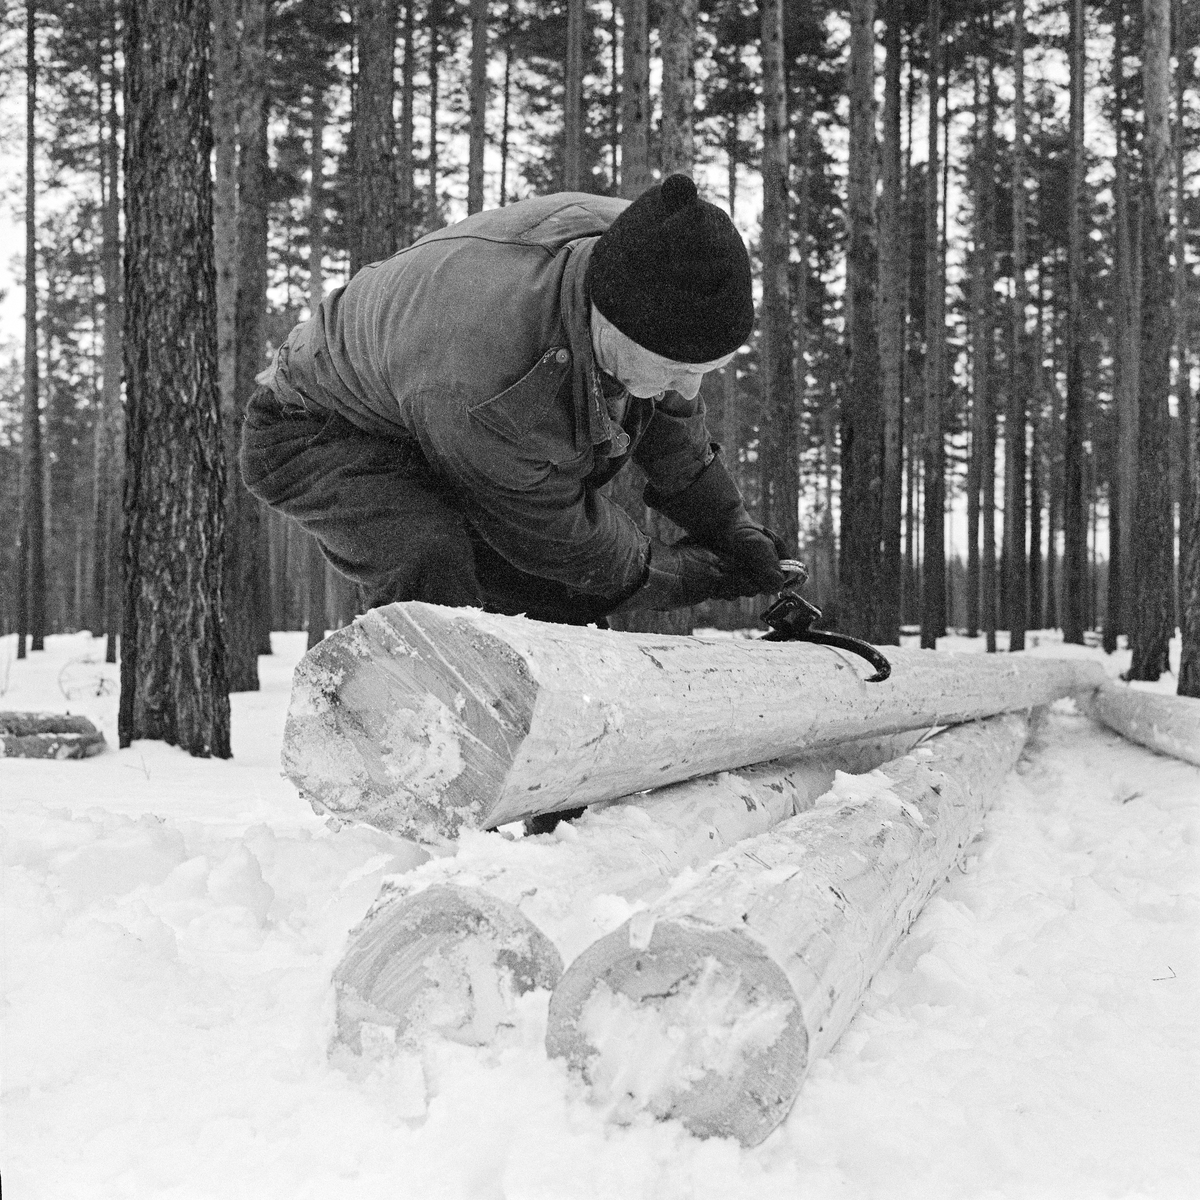 Tømmerkjøreren Johan Rasch (1916-2009) legger opp tømmer i ei lunne i Svartholtet i Elverum vinteren 1971.  Arbeidsredskapet var ei tømmersaks med lekker som gjorde at grepet om stokken ble strammet hardere jo kraftigere Johan dro i handtaksbøyla.  Tømmersaksa ble innført i norsk skogbruk tidlig på 1900-tallet.  Inntil da hadde det vært vanlig å slå ei øks inn i stokkendene for så å bruket økseskaftet som handtak når stokken skulle løftes eller vendes.  Denne øksebruken hadde ført til at det oppsto en del sprekkskader i tømmeret, noe som innebar at en del i utgangspunktet gode stokker måtte kortes i sagbrukene.  

Johan Rasch arbeidet i vadmelsbukser og dongerijakke, han hadde ullue på hodet og digre arbeidshansker på hendene.  Arbeidet med de tunge tømmerstokkene og saksa var belastende.  På sine gamle dager strevde Johan Rasch med smerter i hofter og rygg.